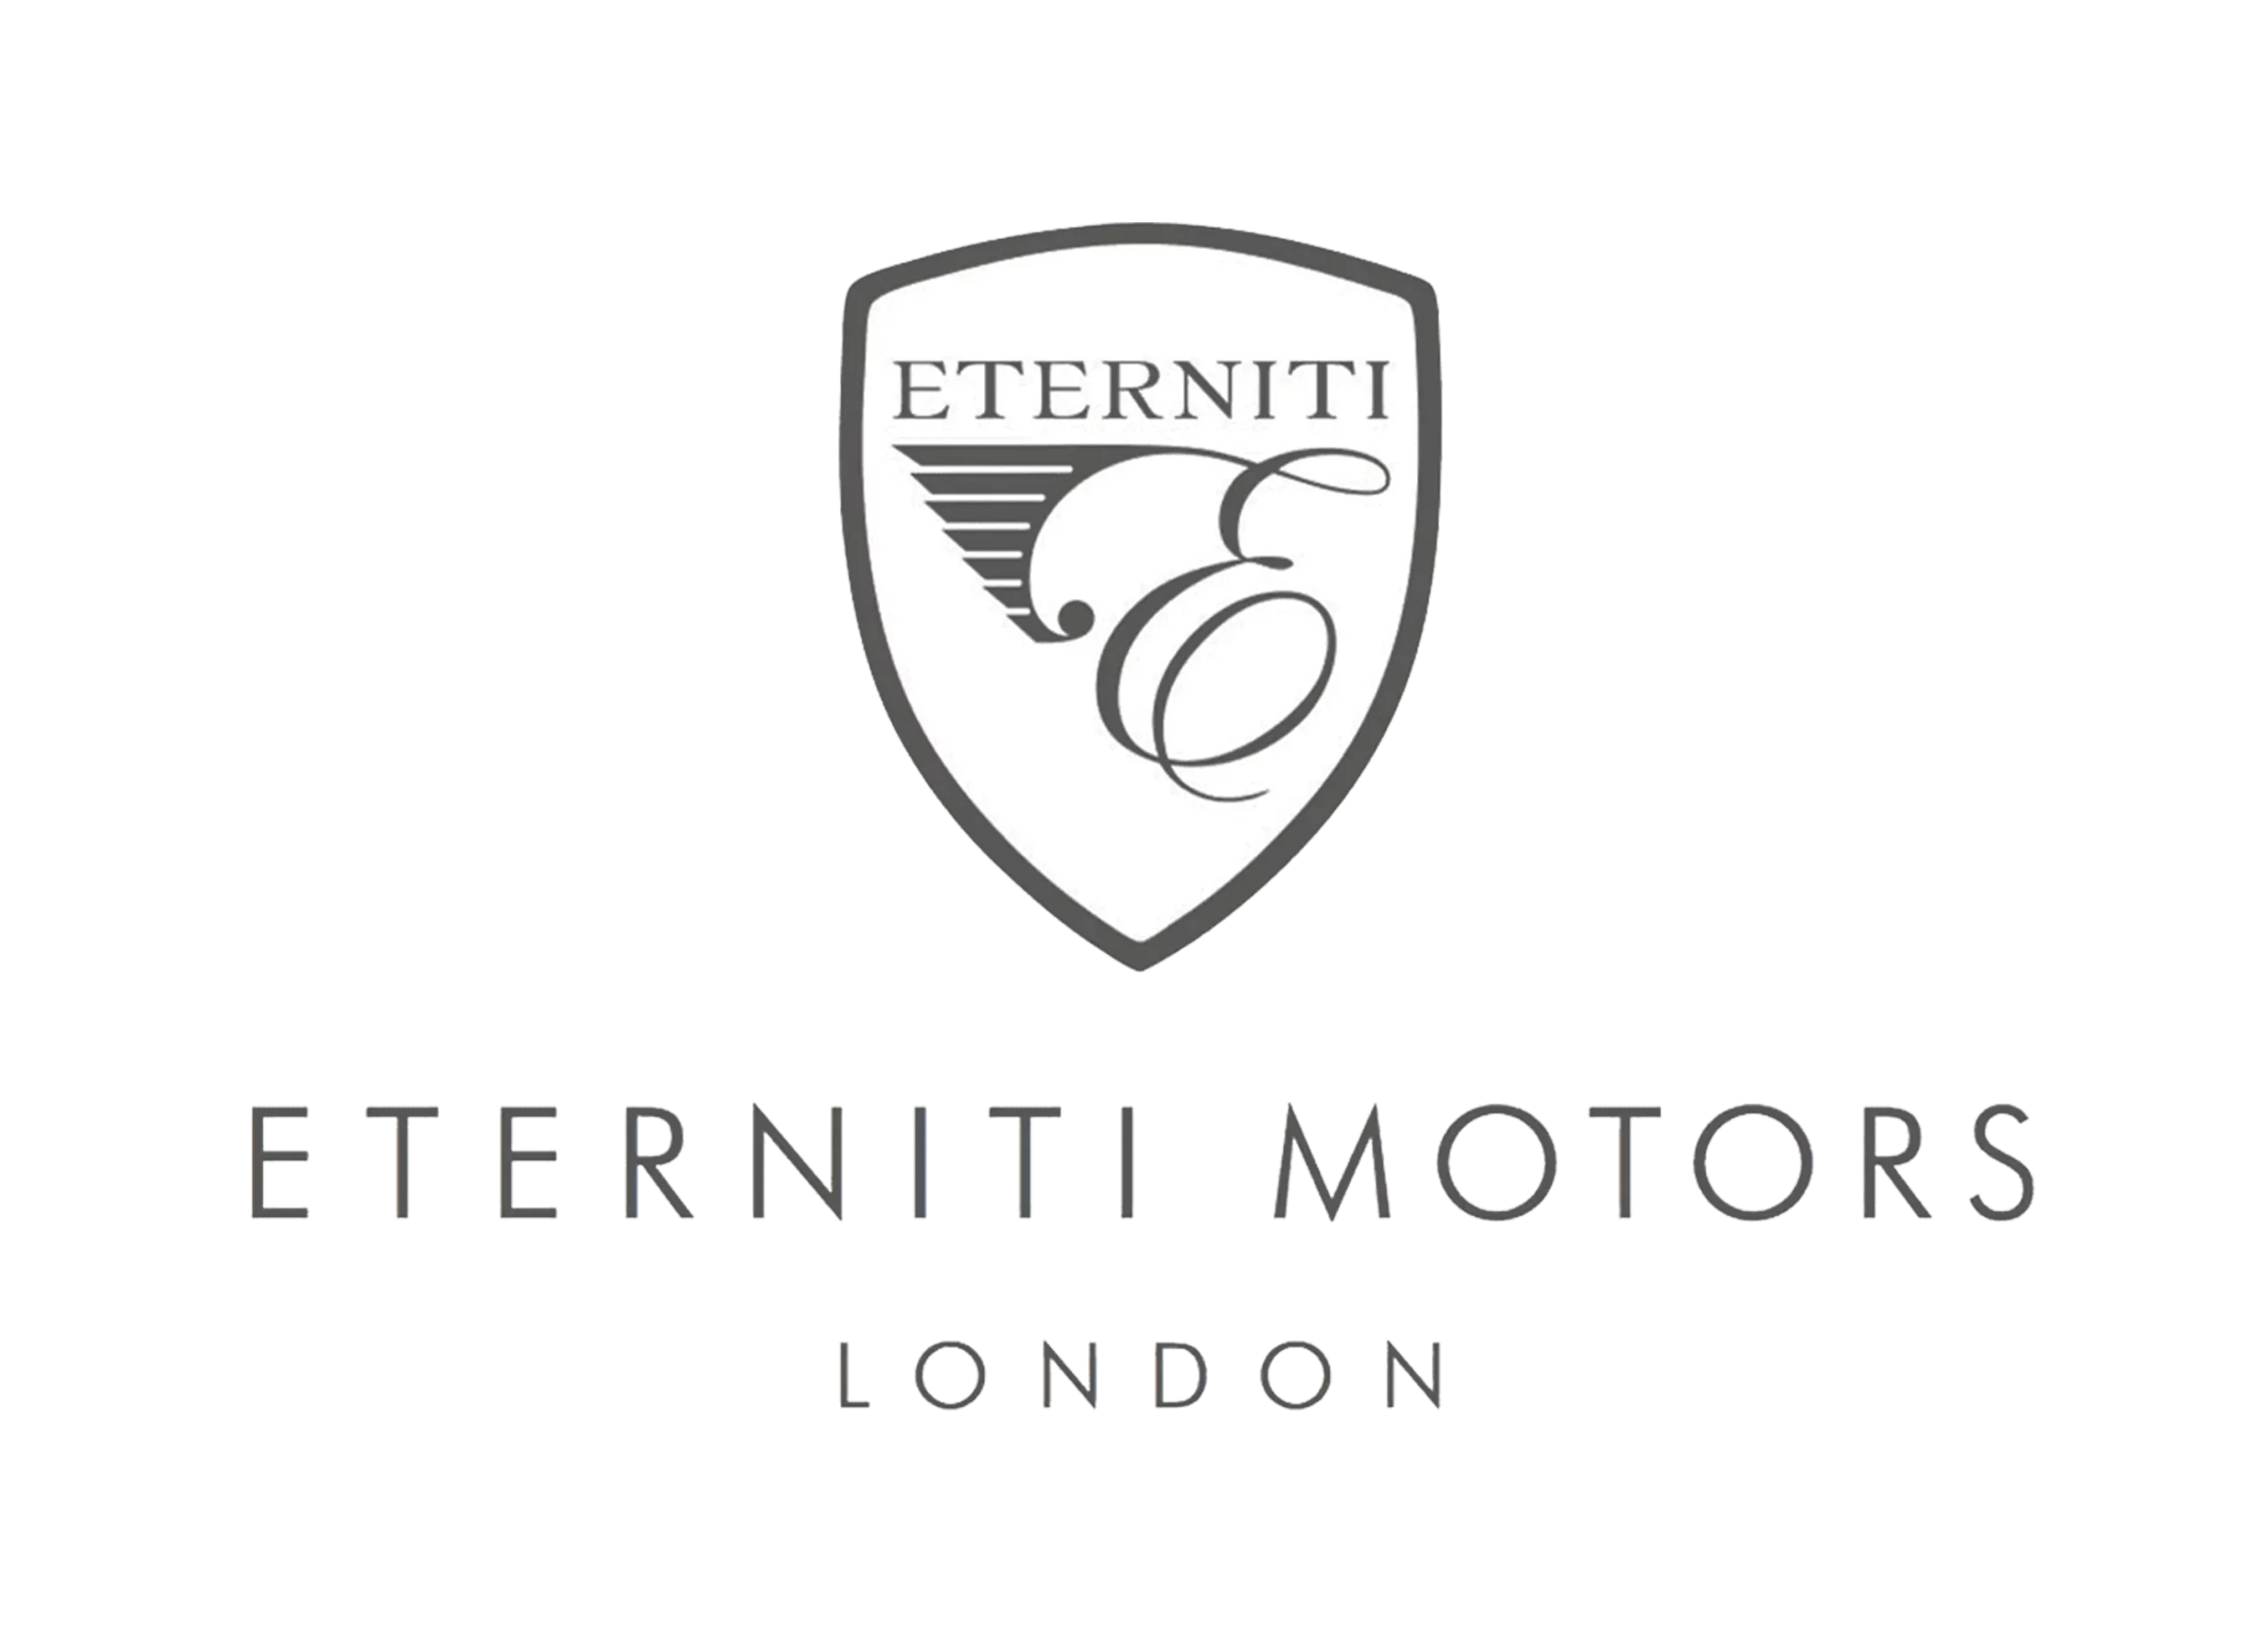 Eterniti logo 2010-2014